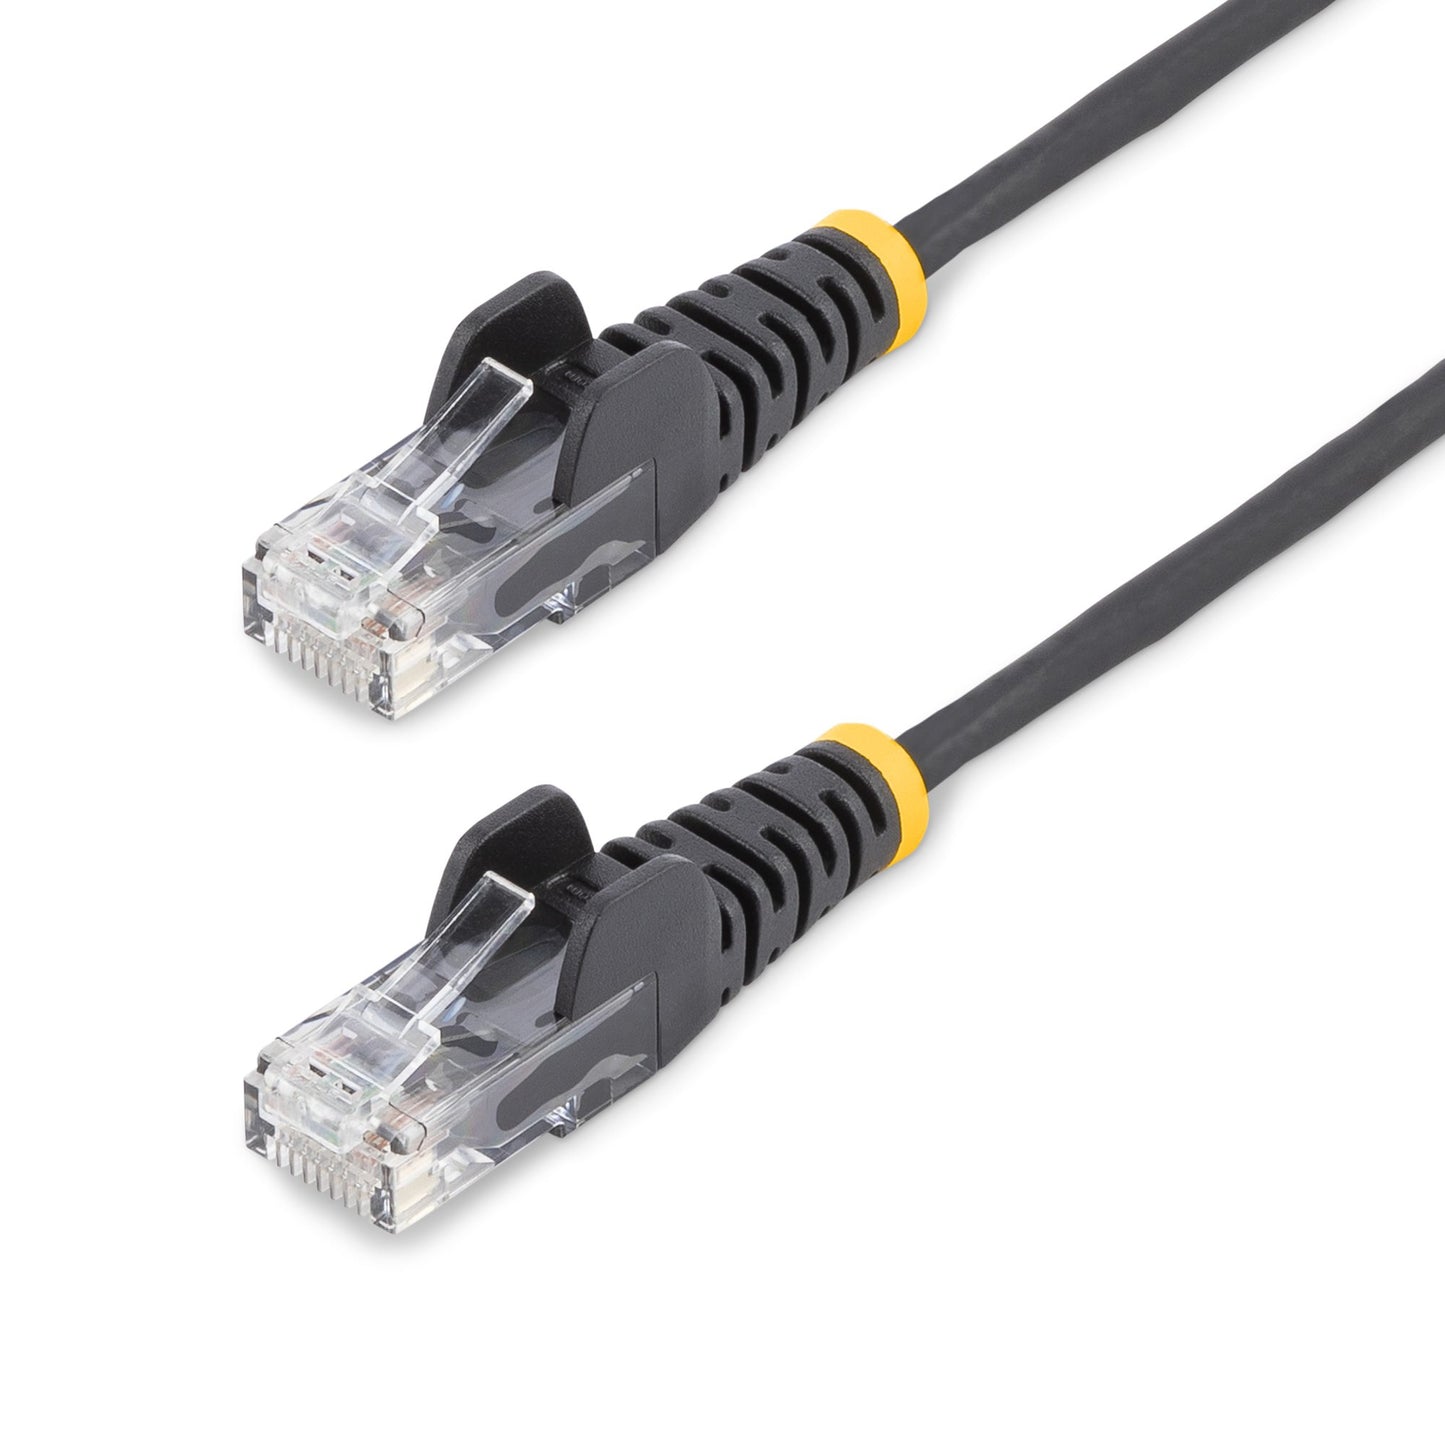 StarTech.com 2 m CAT6 Cable - Slim - Snagless RJ45 Connectors - Black-0